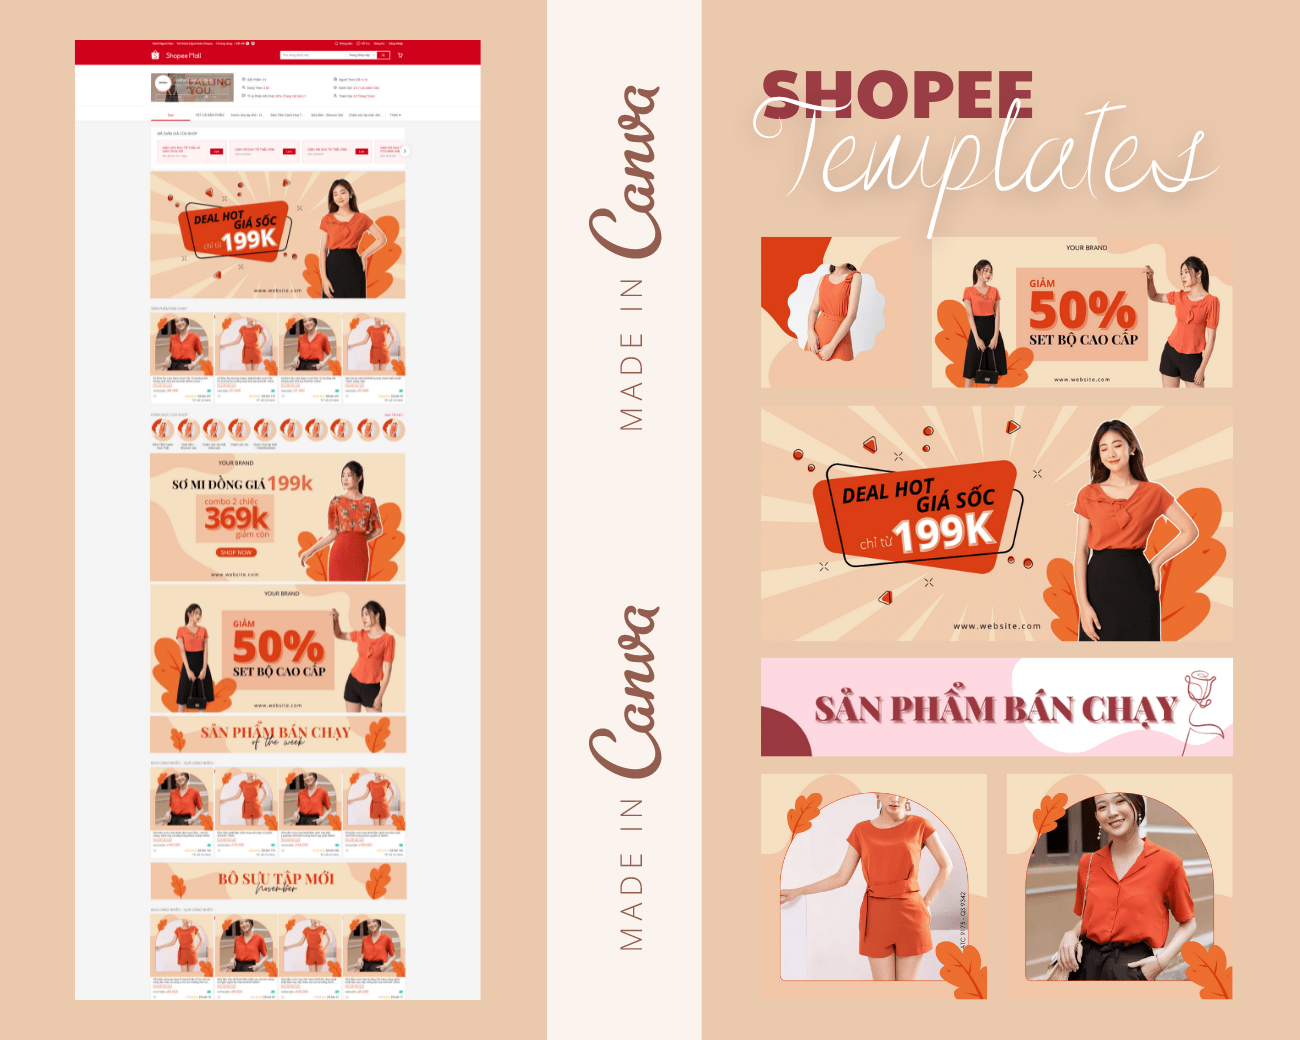 Làm cách nào để có thể thiết kế template cho Shopee bằng Canva